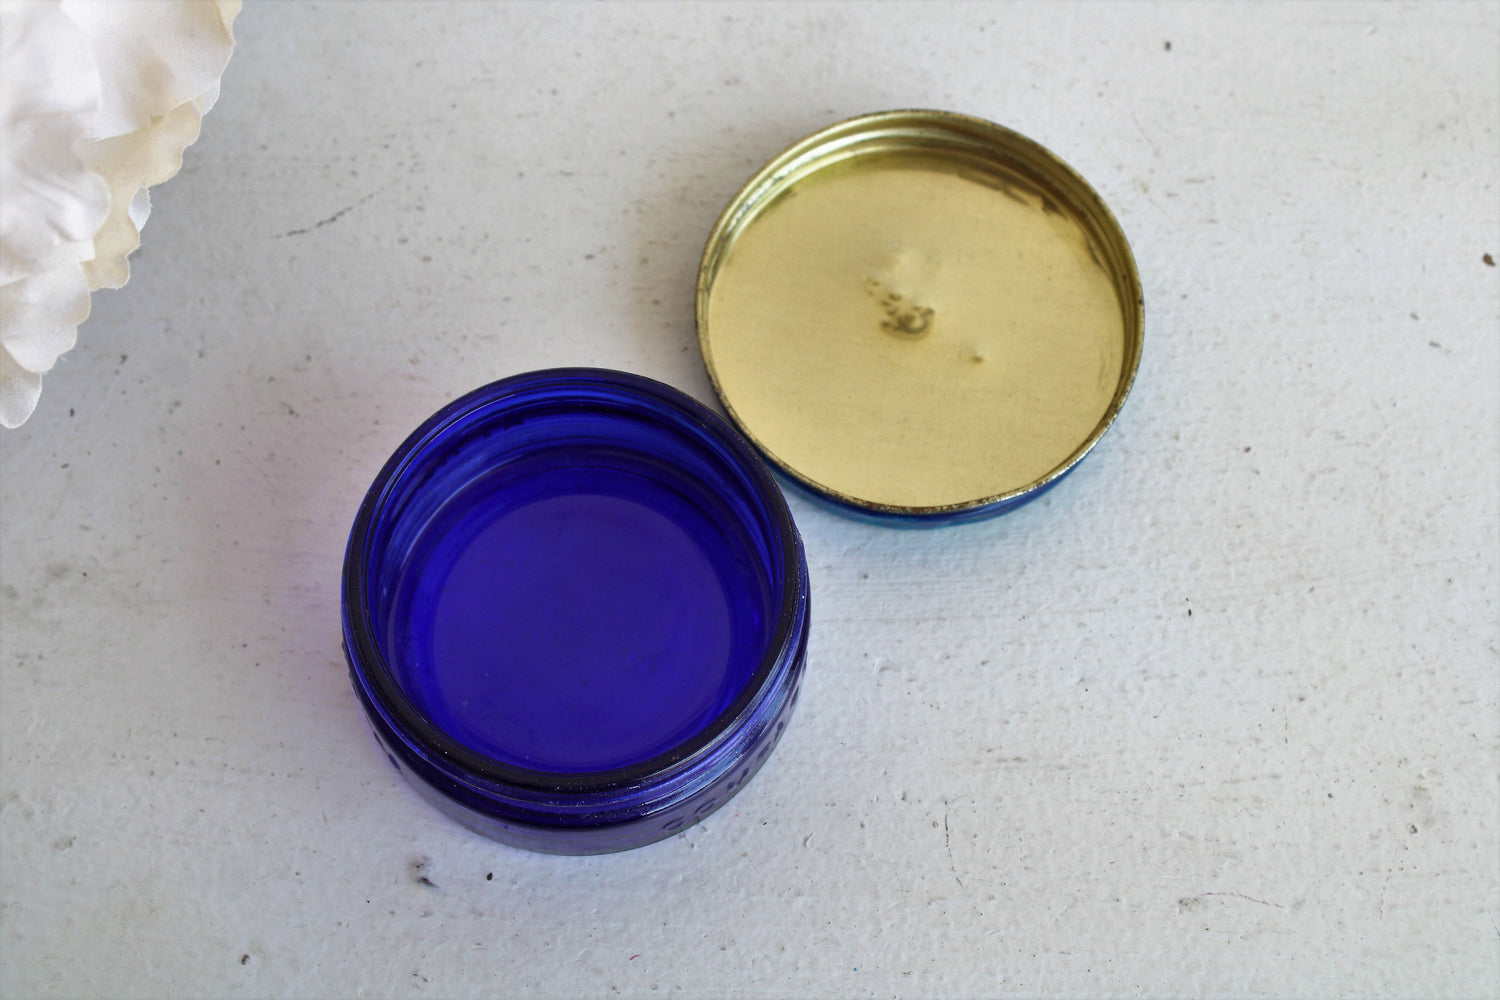 Vintage 1950s Cobalt Blue Glass Jar of Blue Coral Sealer